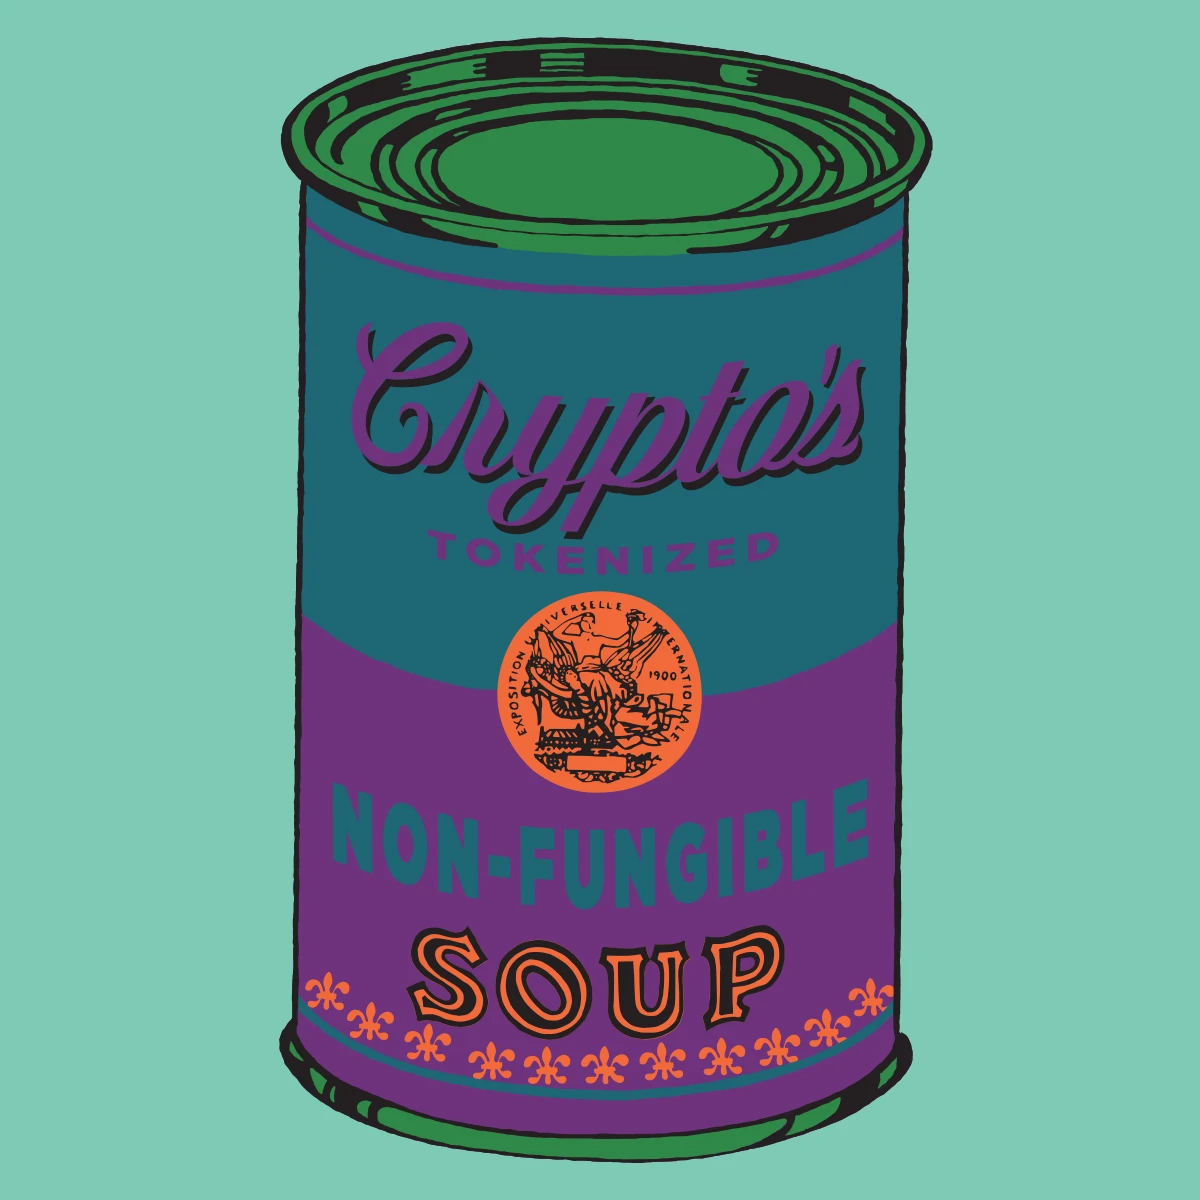 Non-Fungible Soup #1877